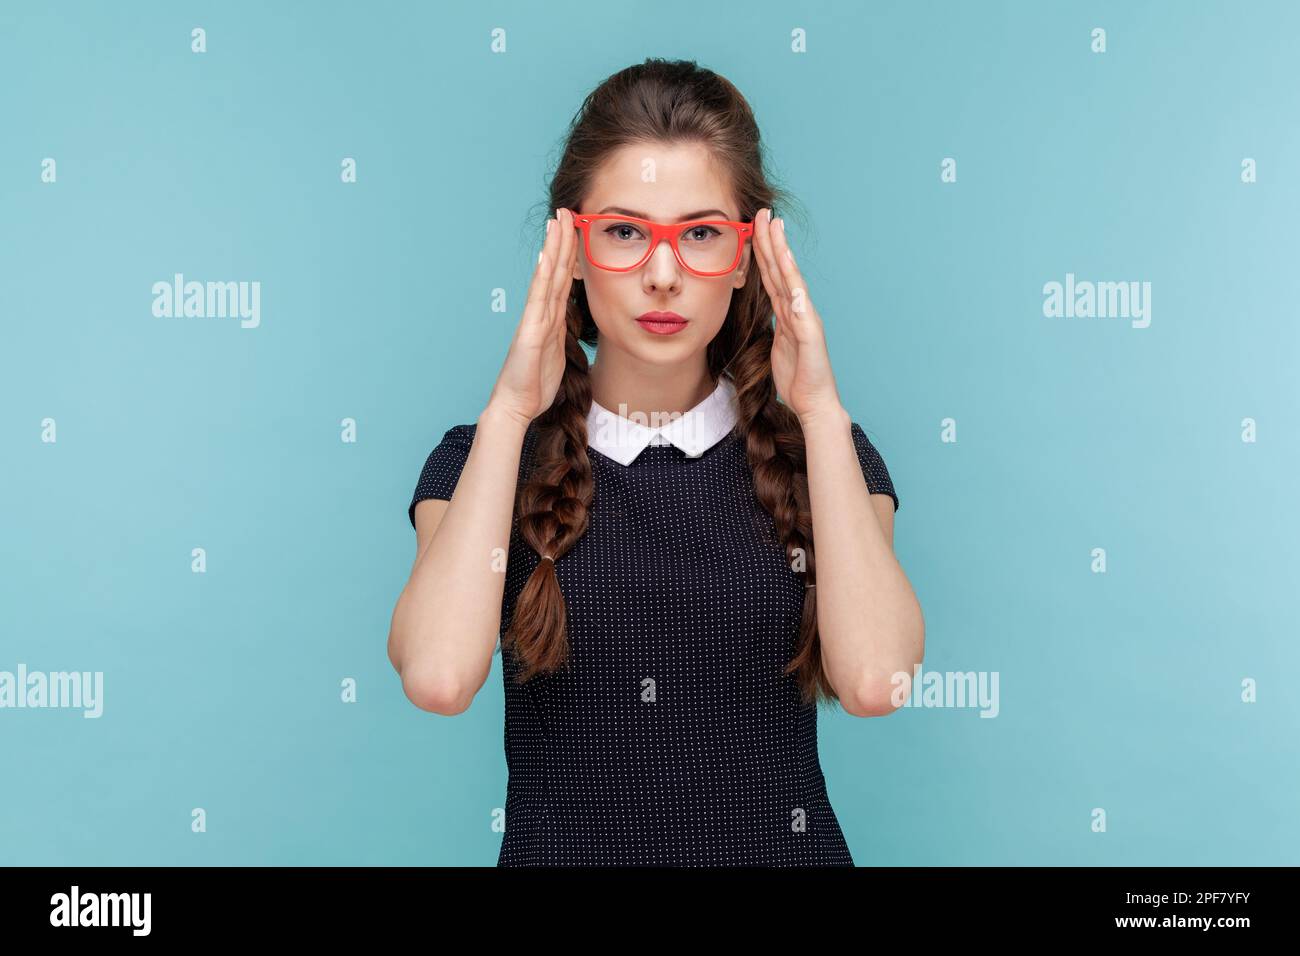 Das Porträt einer attraktiven Frau mit Geflechten hält die Hände auf dem Rahmen einer roten Brille, schaut aufmerksam in die Kamera und trägt ein schwarzes Kleid. Frau Indoor Studio Aufnahme isoliert auf blauem Hintergrund Stockfoto